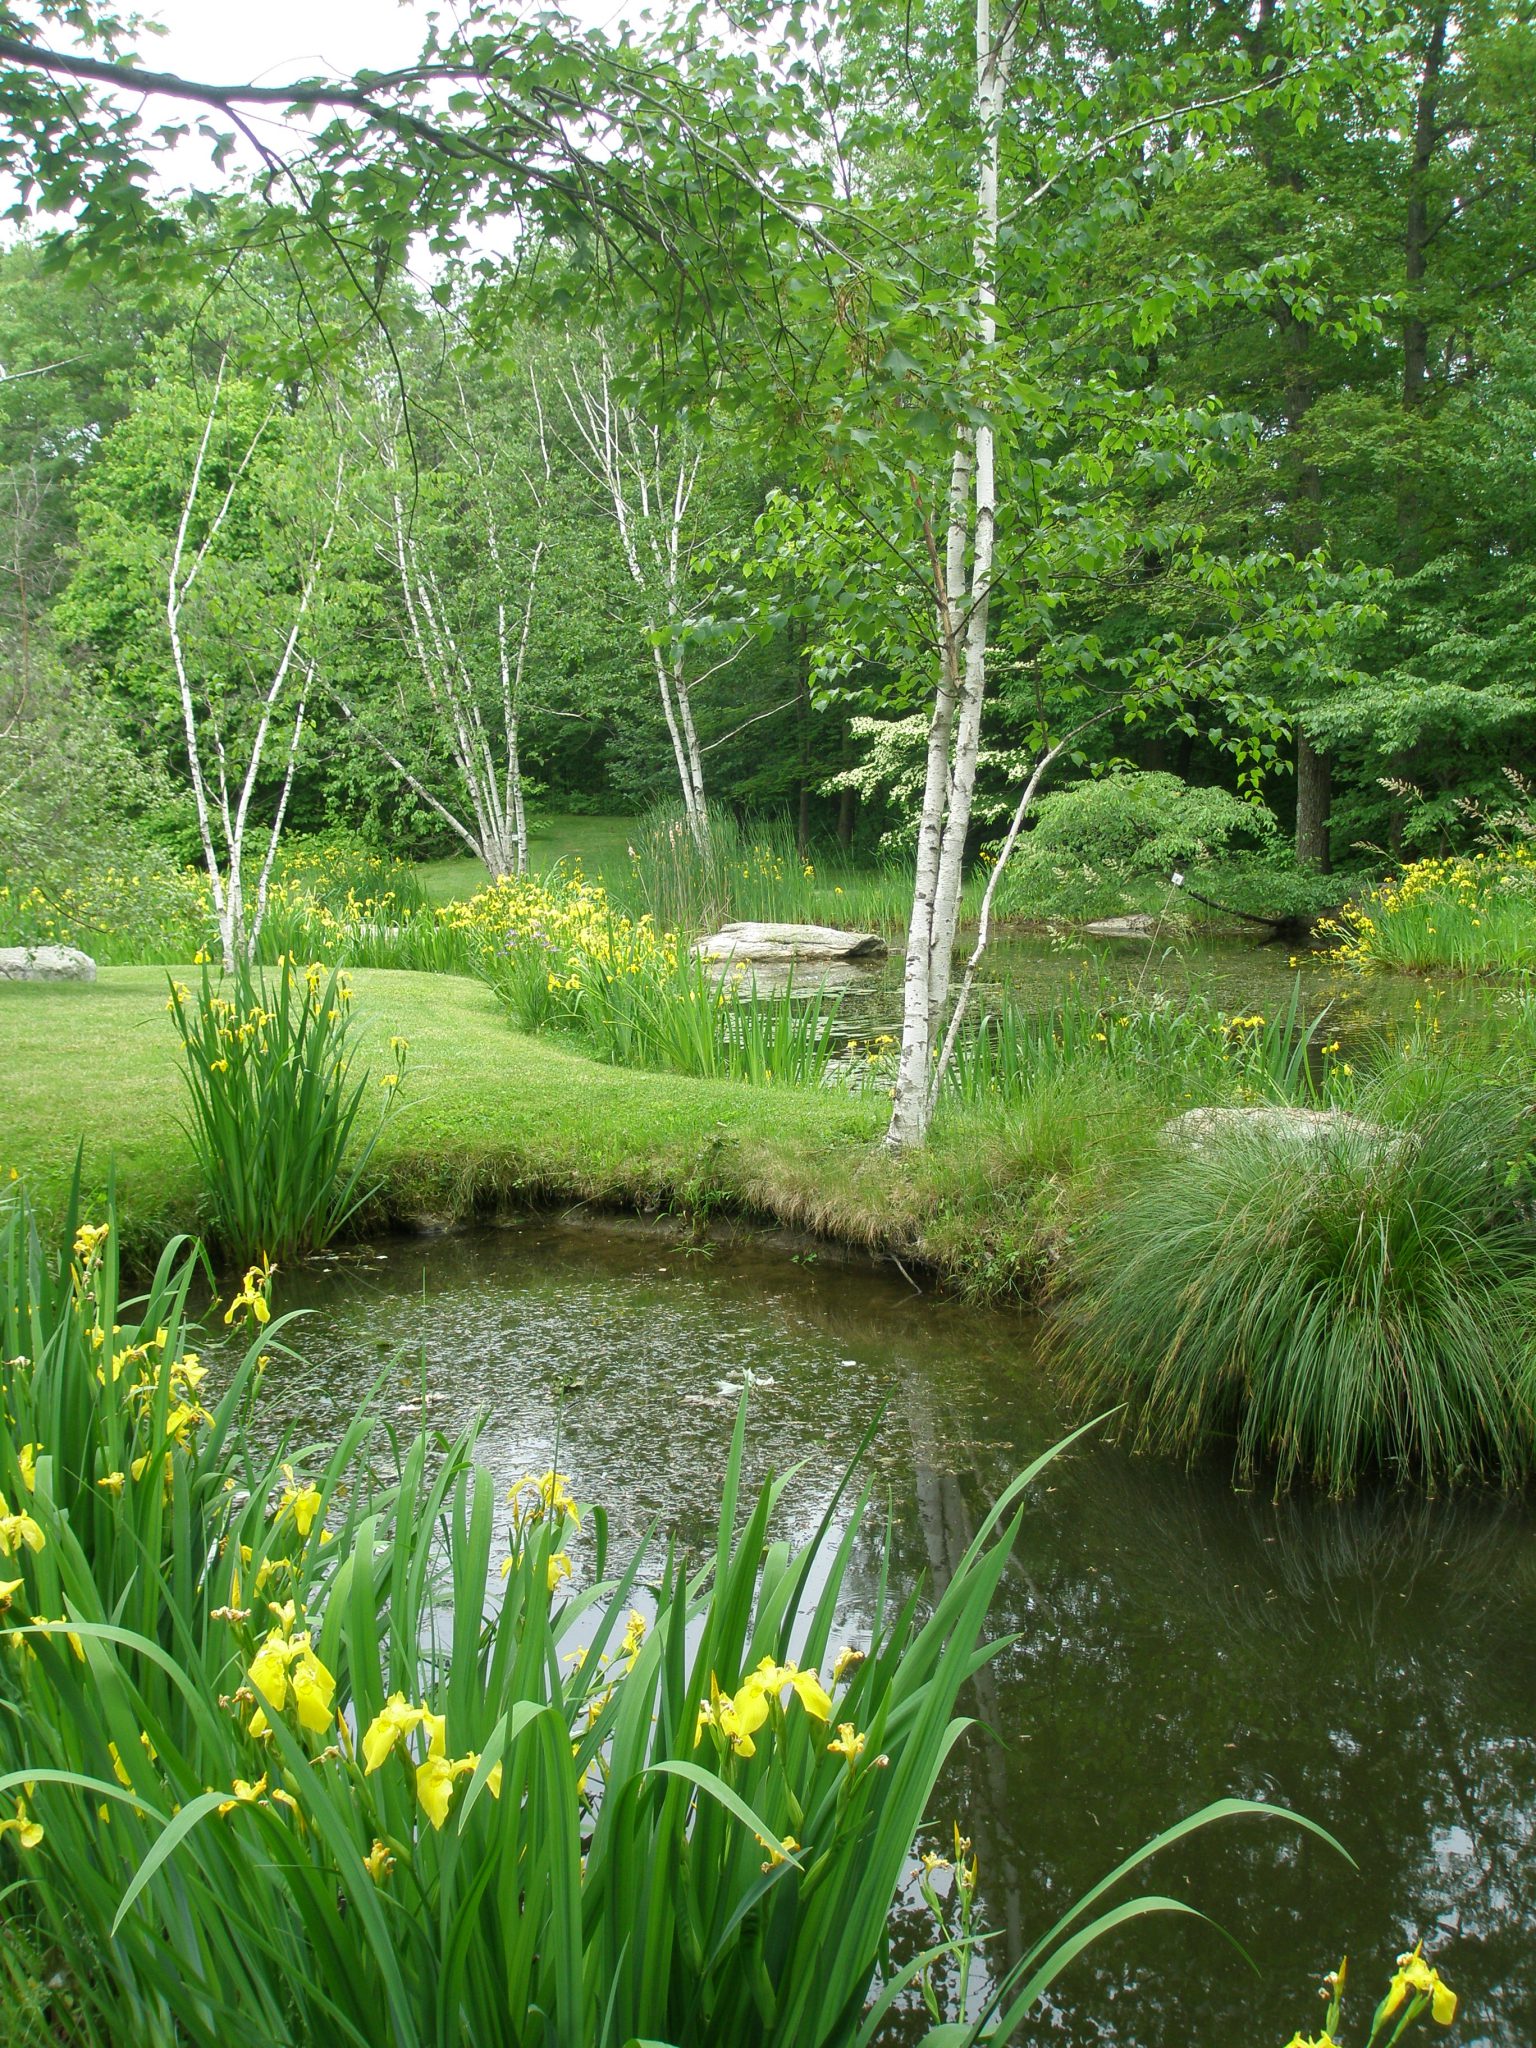 Pond Garden